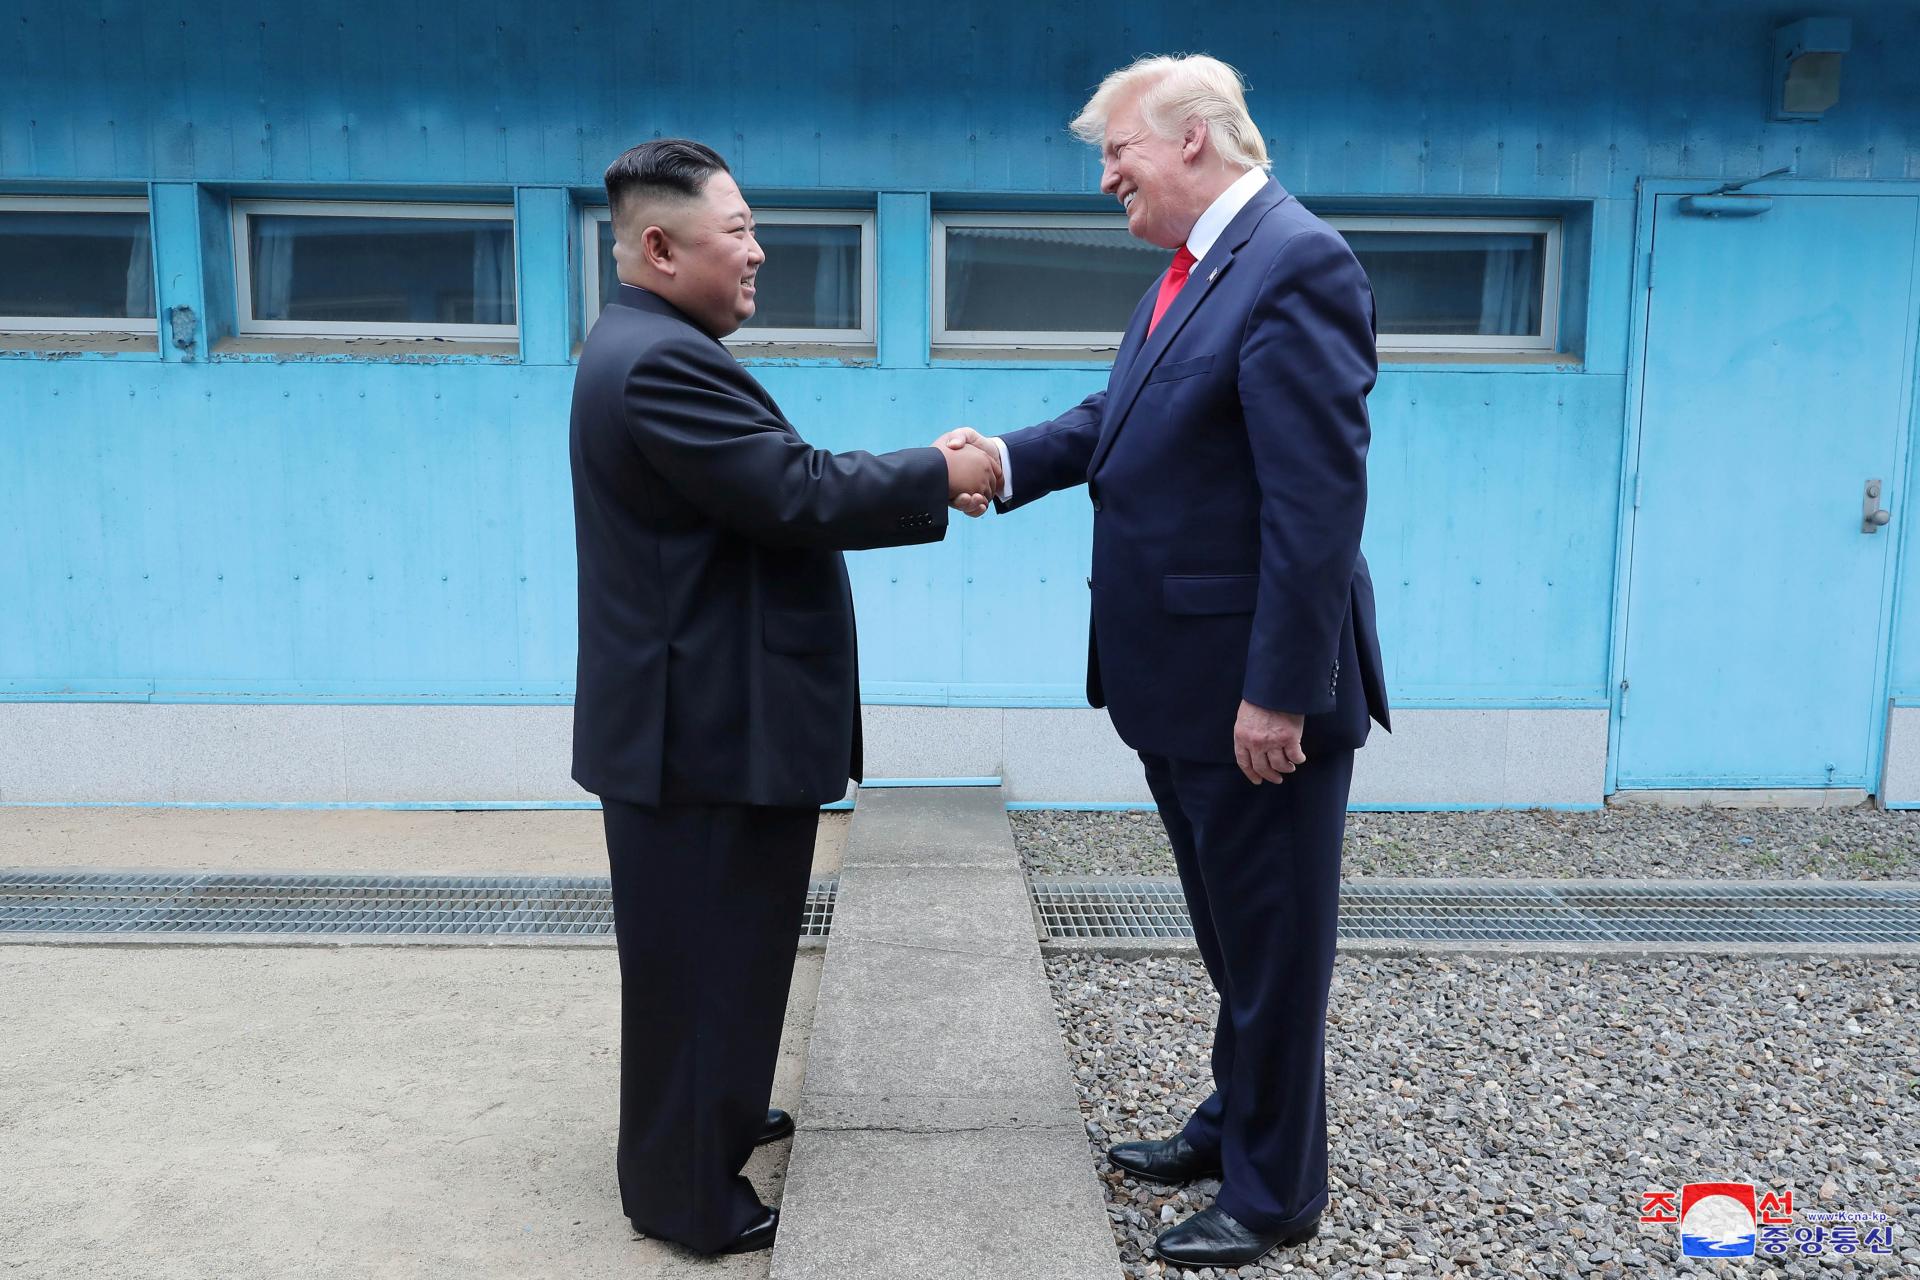 Trump nedôveroval Kim Čong-unovi, tvrdí bývalý vysokopostavený diplomat